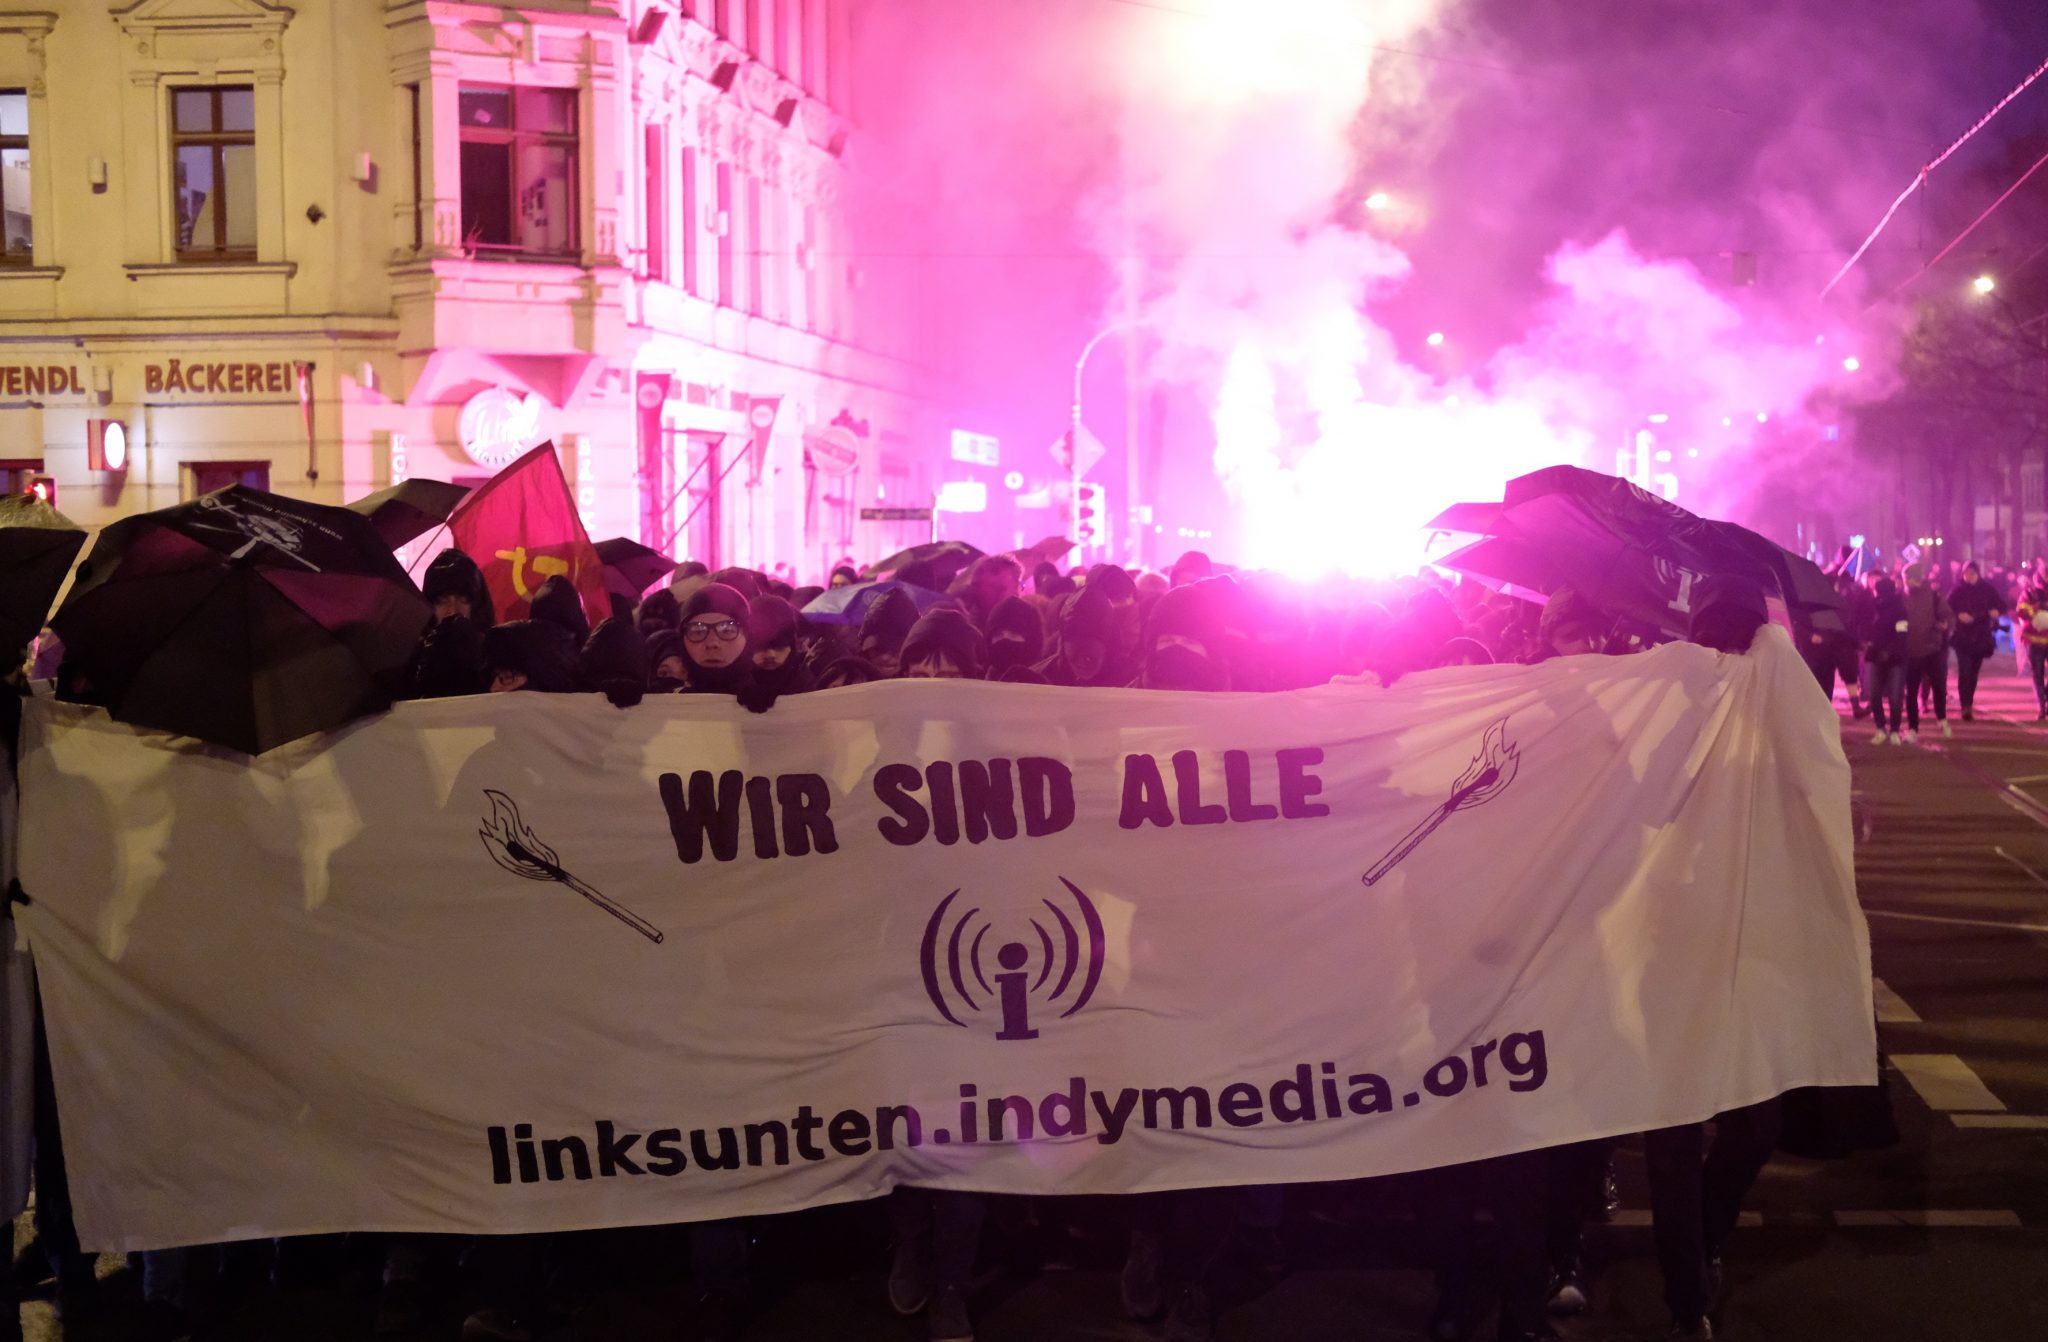 Teilnehmer einer Demonstration in Leipzig protestieren gegen ein Verbot der linksradikalen Plattform Indymedia (Archivbild) Foto: picture alliance/Sebastian Willnow/dpa